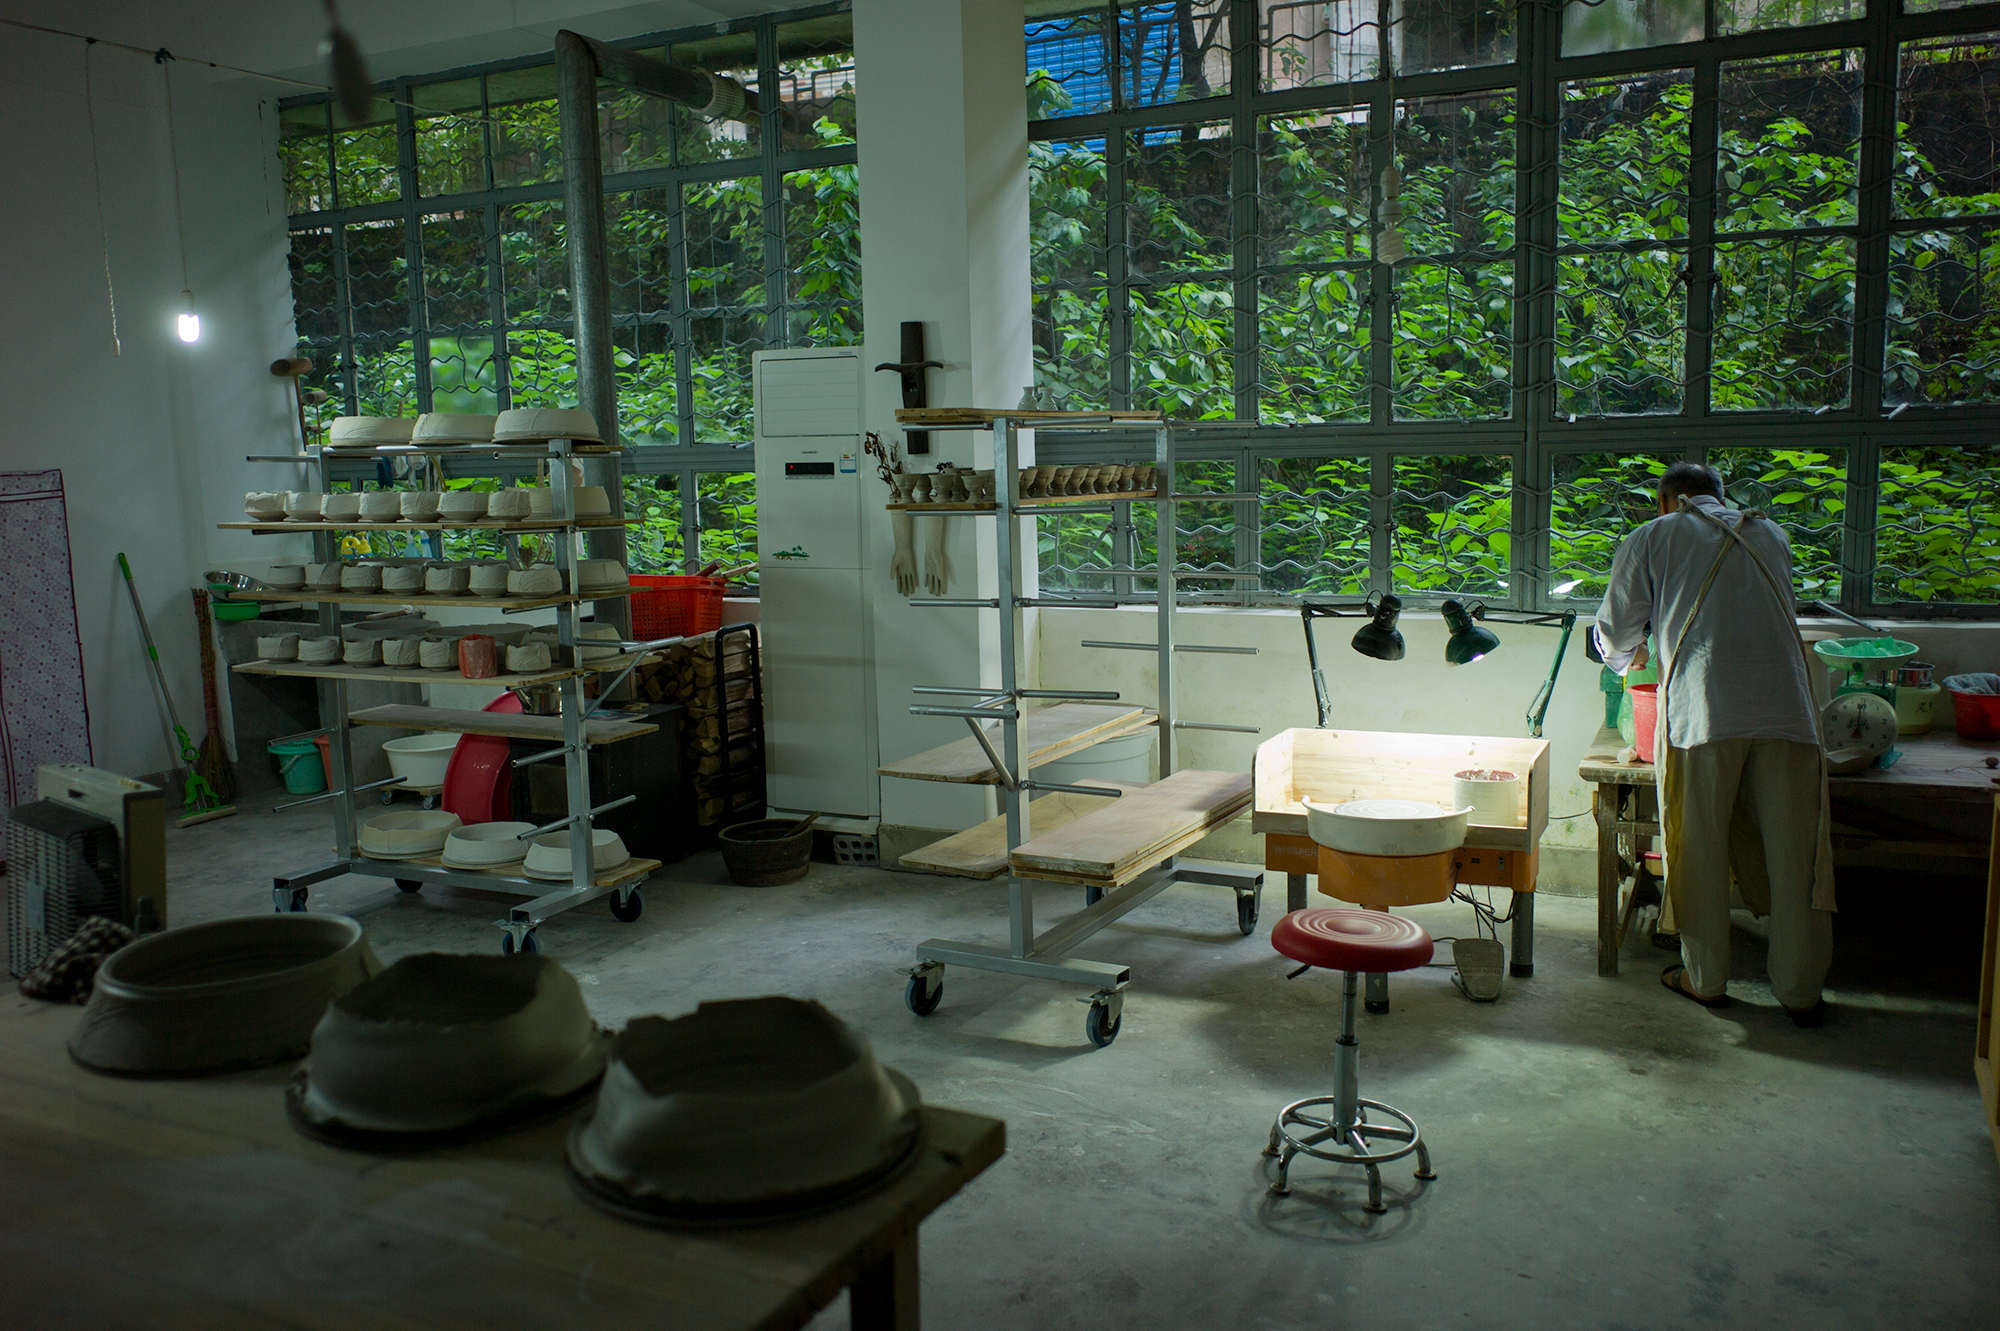 Takeshi Yasuda's RedHouse studio